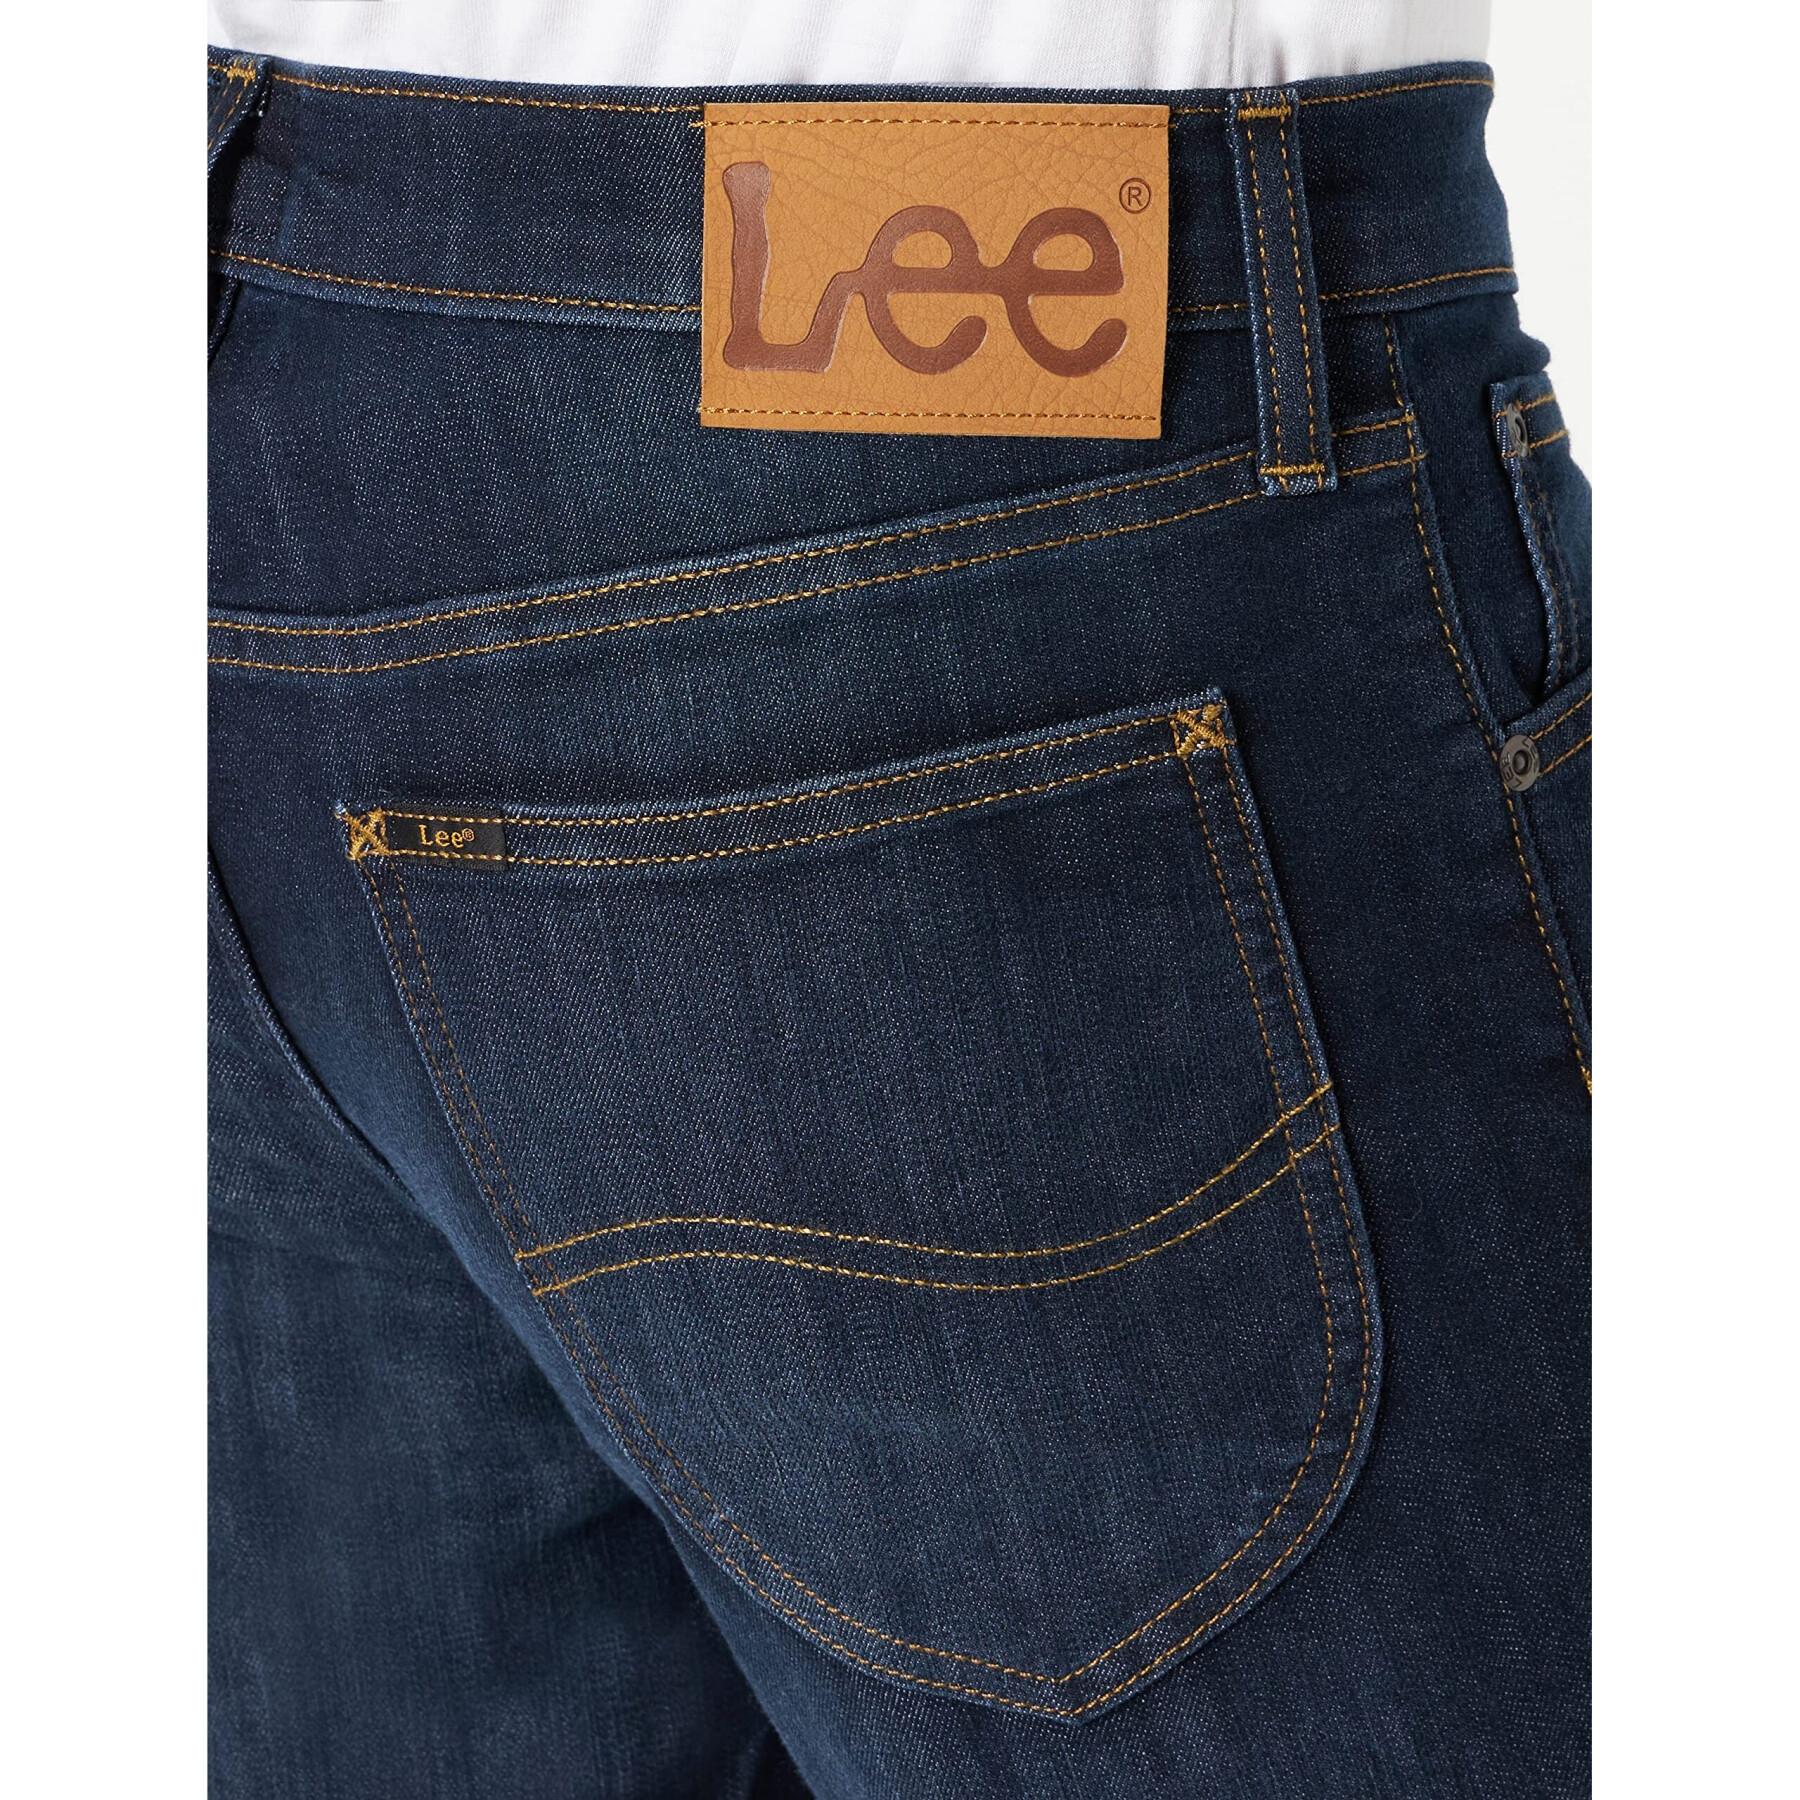 Regular jeans Lee Daren Strong Hand